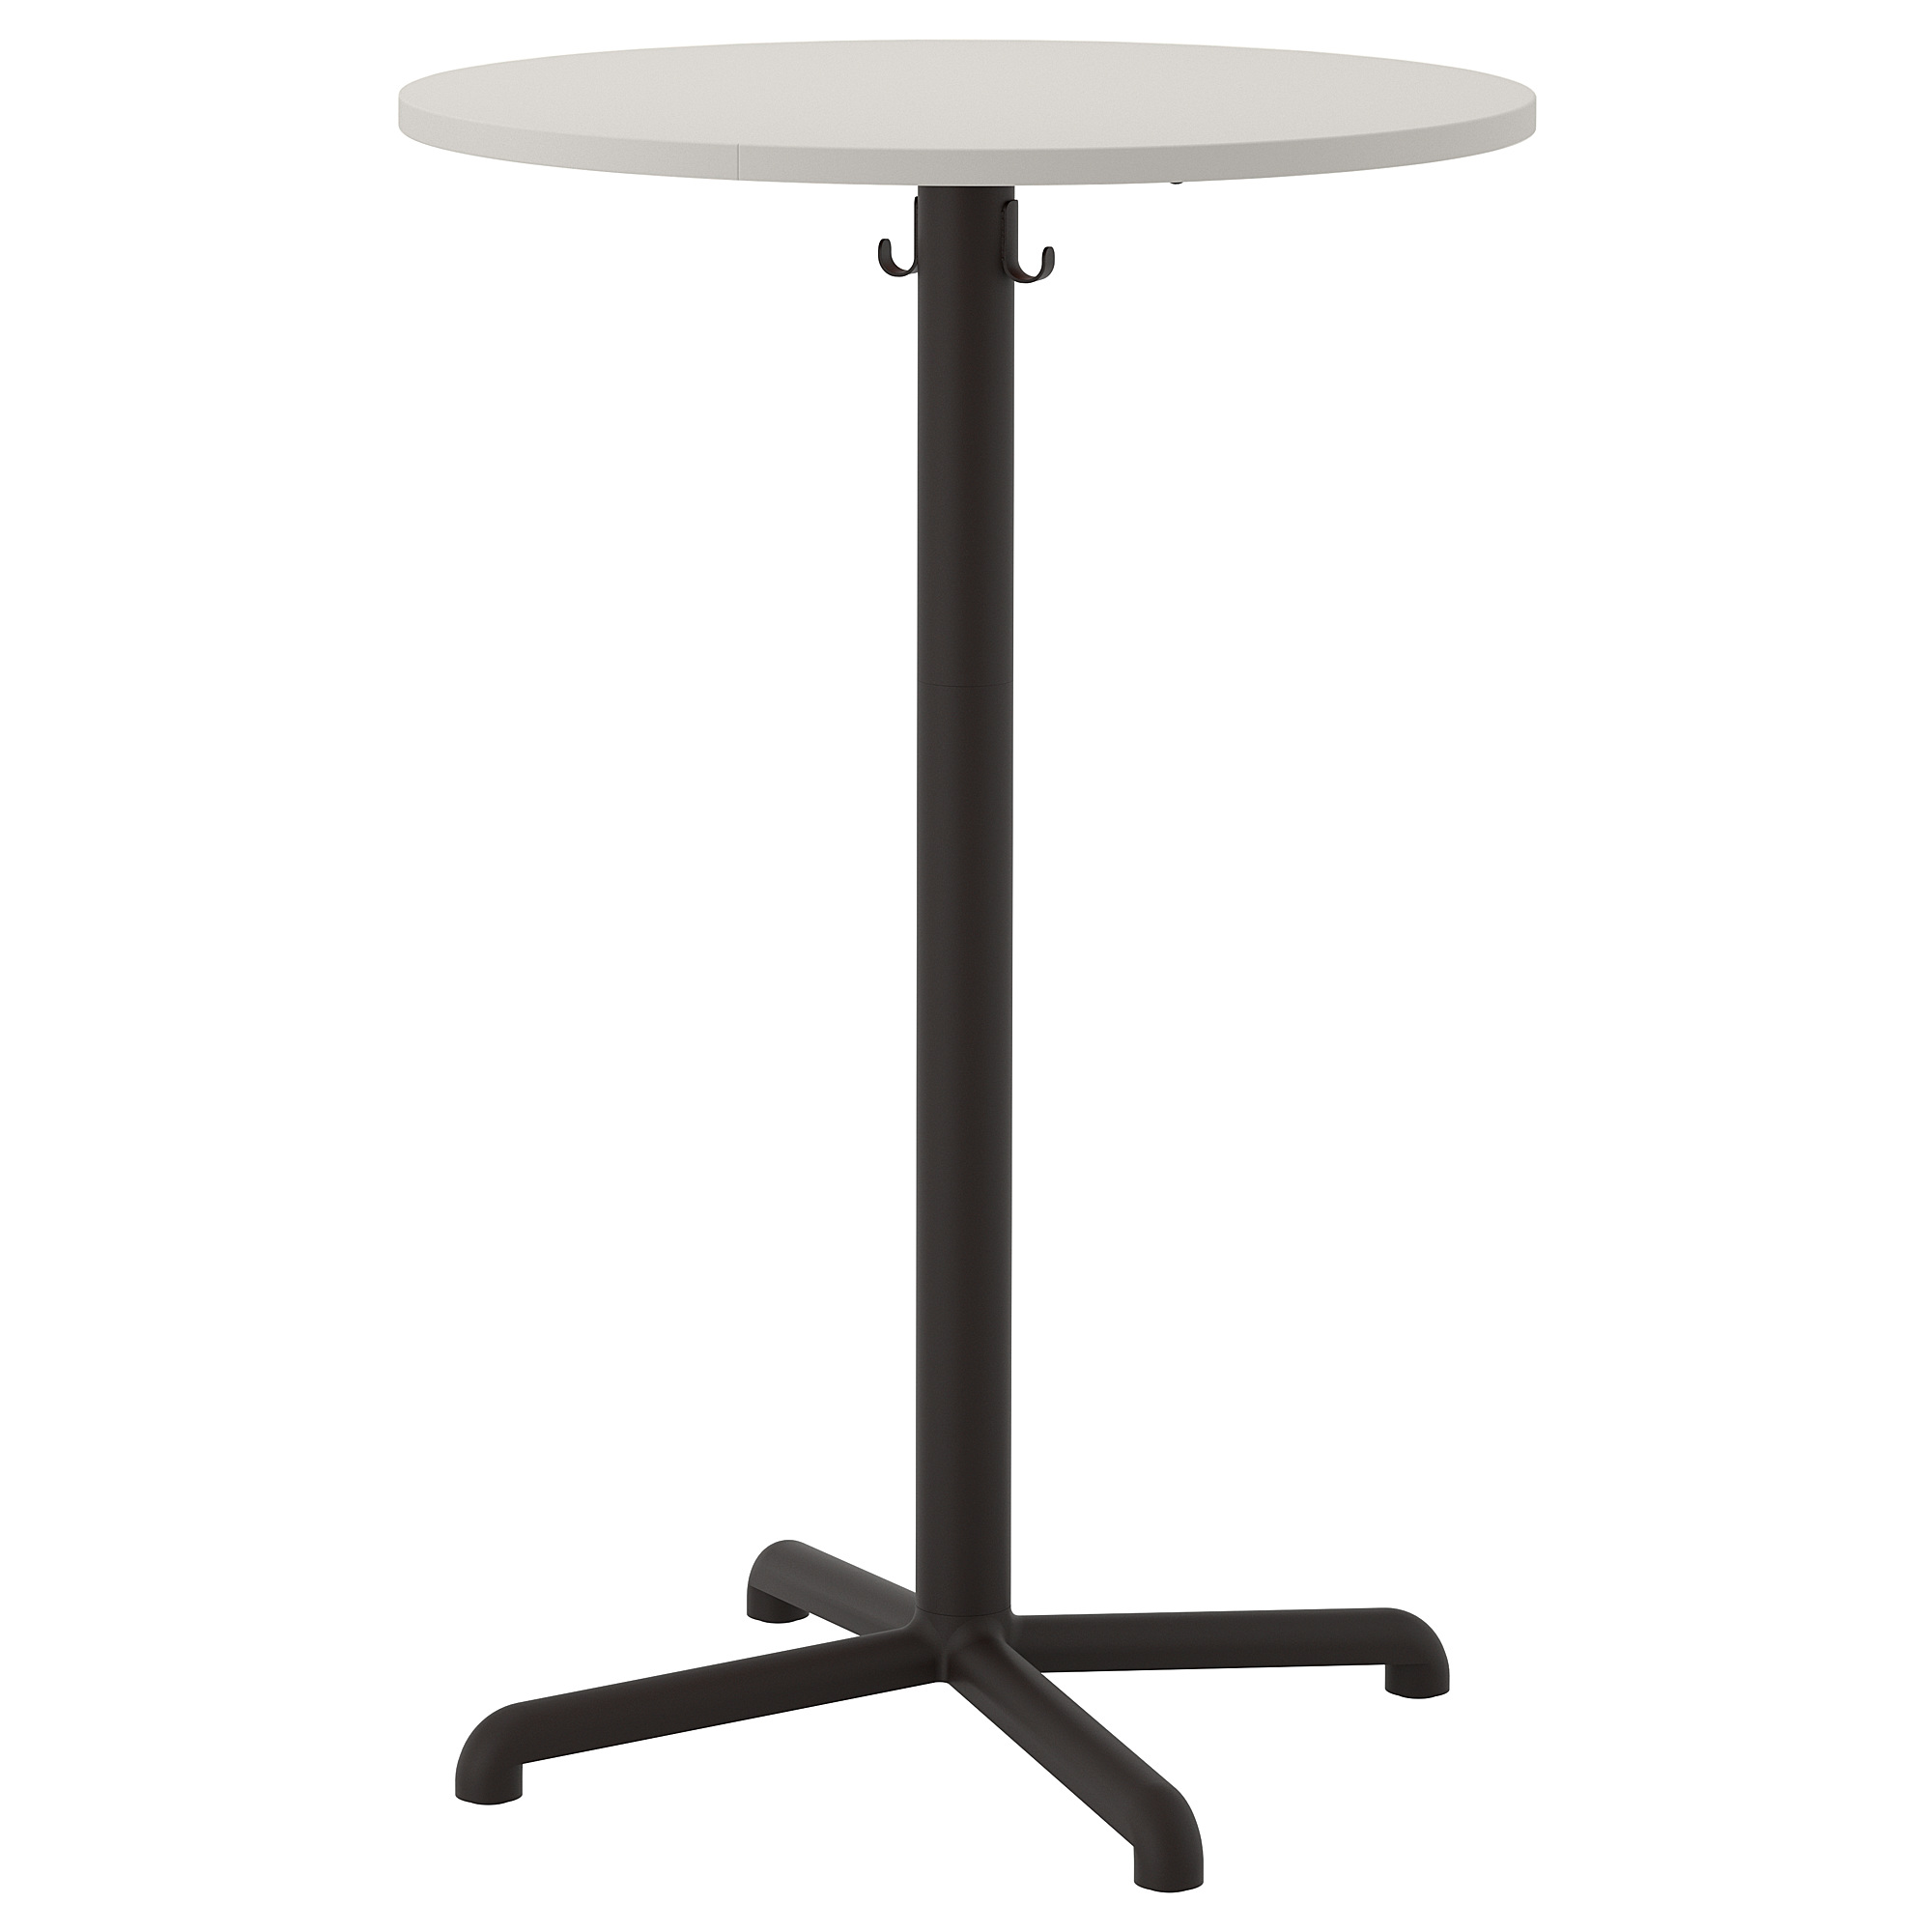 Стоячий столик. Stensele Стенселе барный стол. Барный стол икеа черный. Ikea Стенселе. Stensele Стенселе барный стол, антрацит/антрацит 70 см.